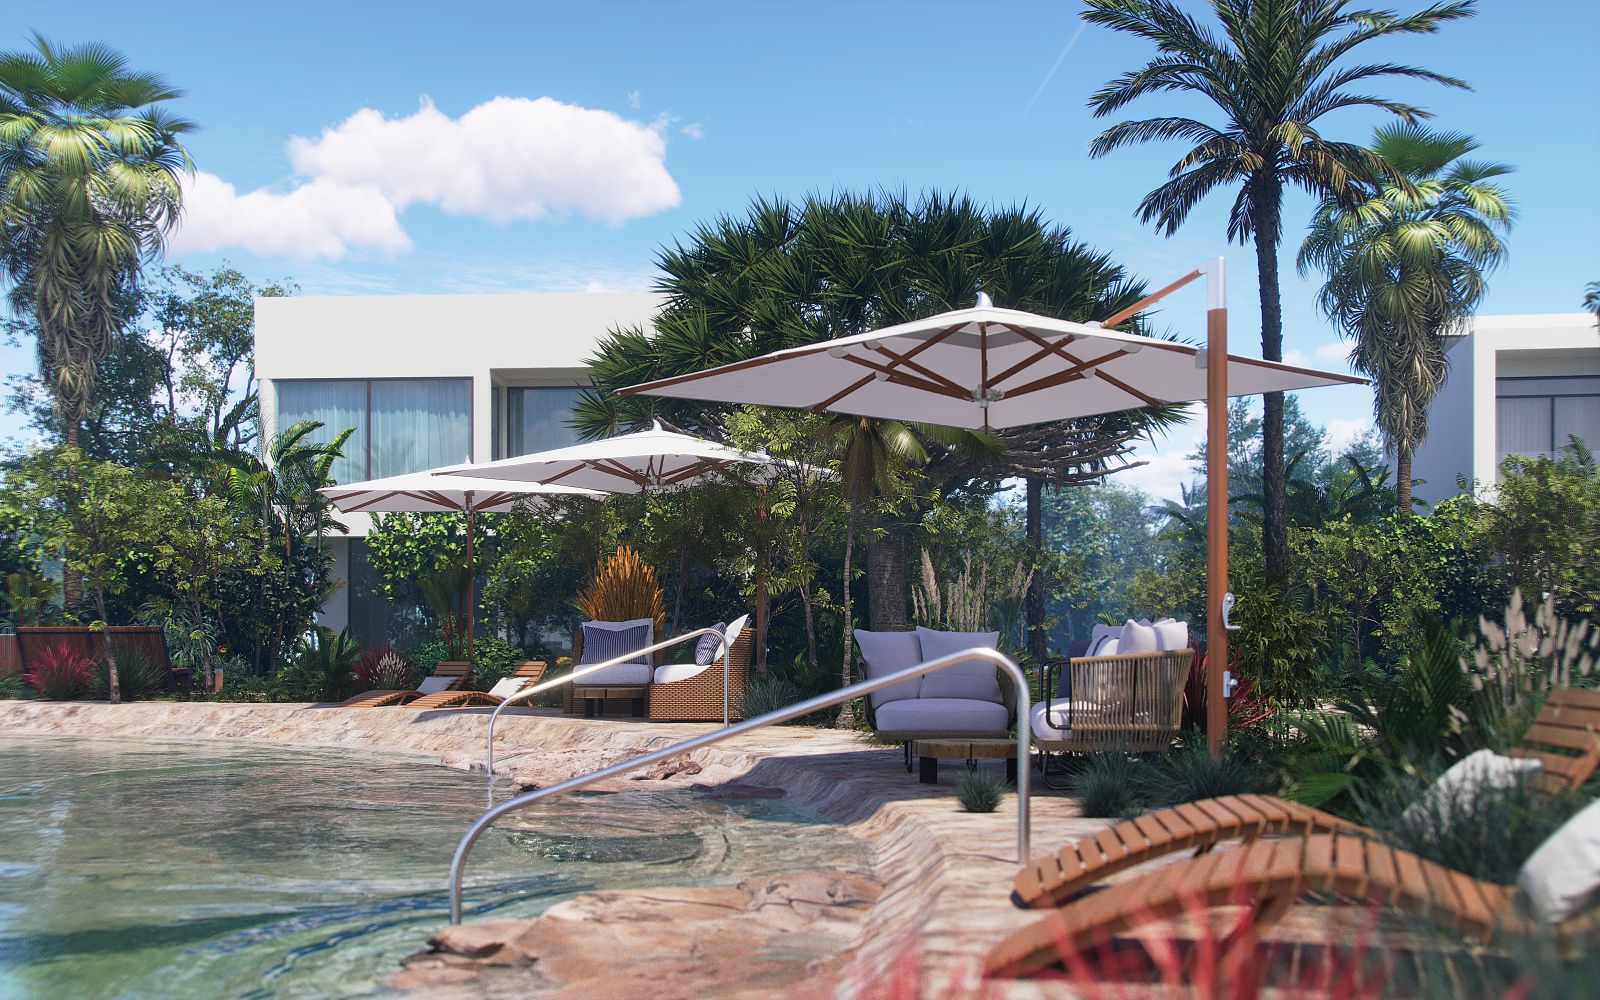 Lote de 703 m2, en residencial con cenote, en venta, Selvamar,  Playa del Carmen.